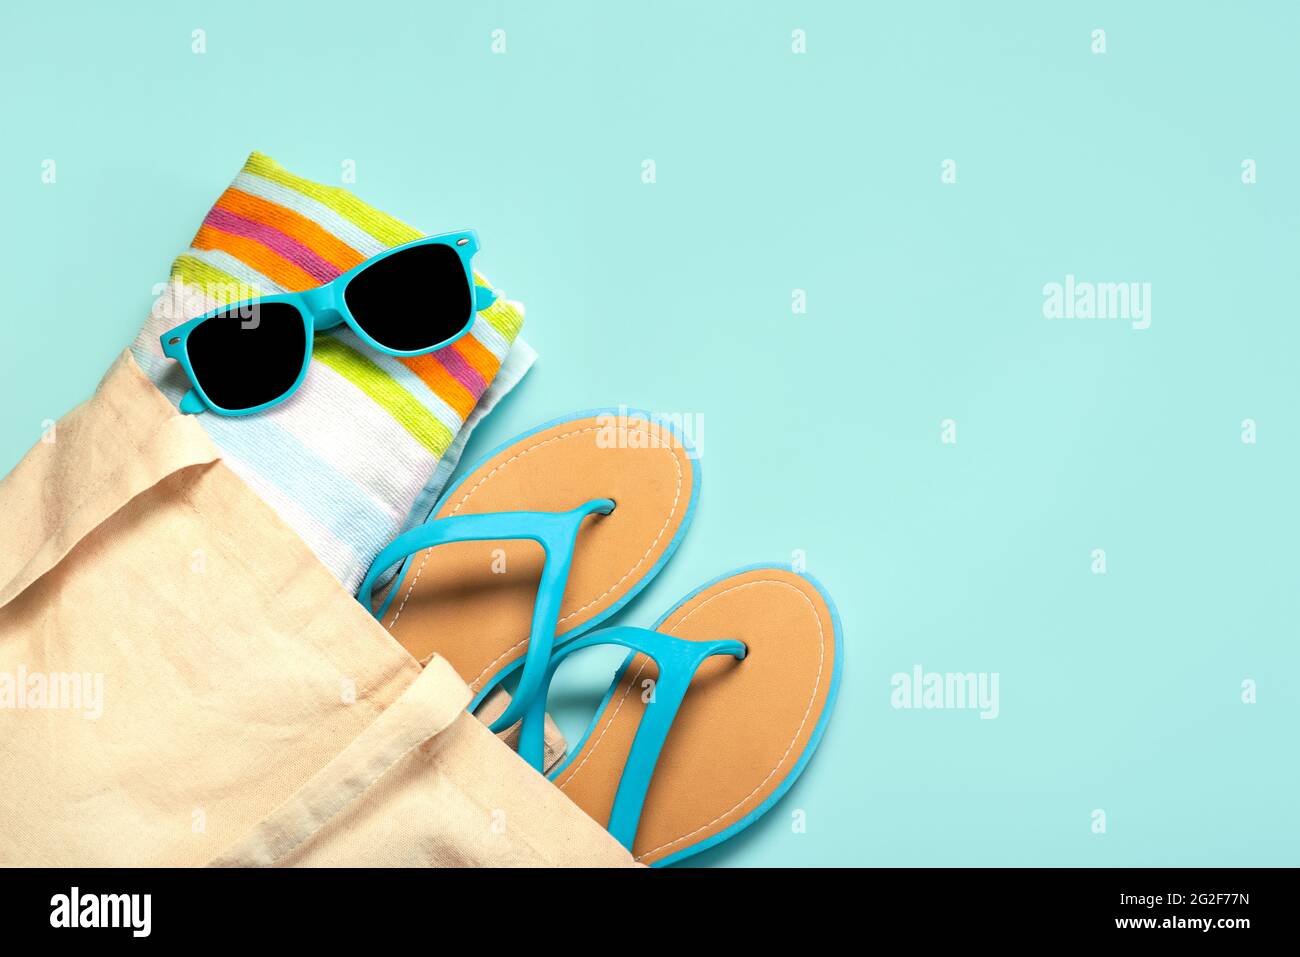 Sommerferienkonzept.Draufsicht auf blaue Flip Flops, Strandtuch, blaue Sonnenbrille und Strandtasche mit Kopierplatz auf blauem Hintergrund Stockfoto